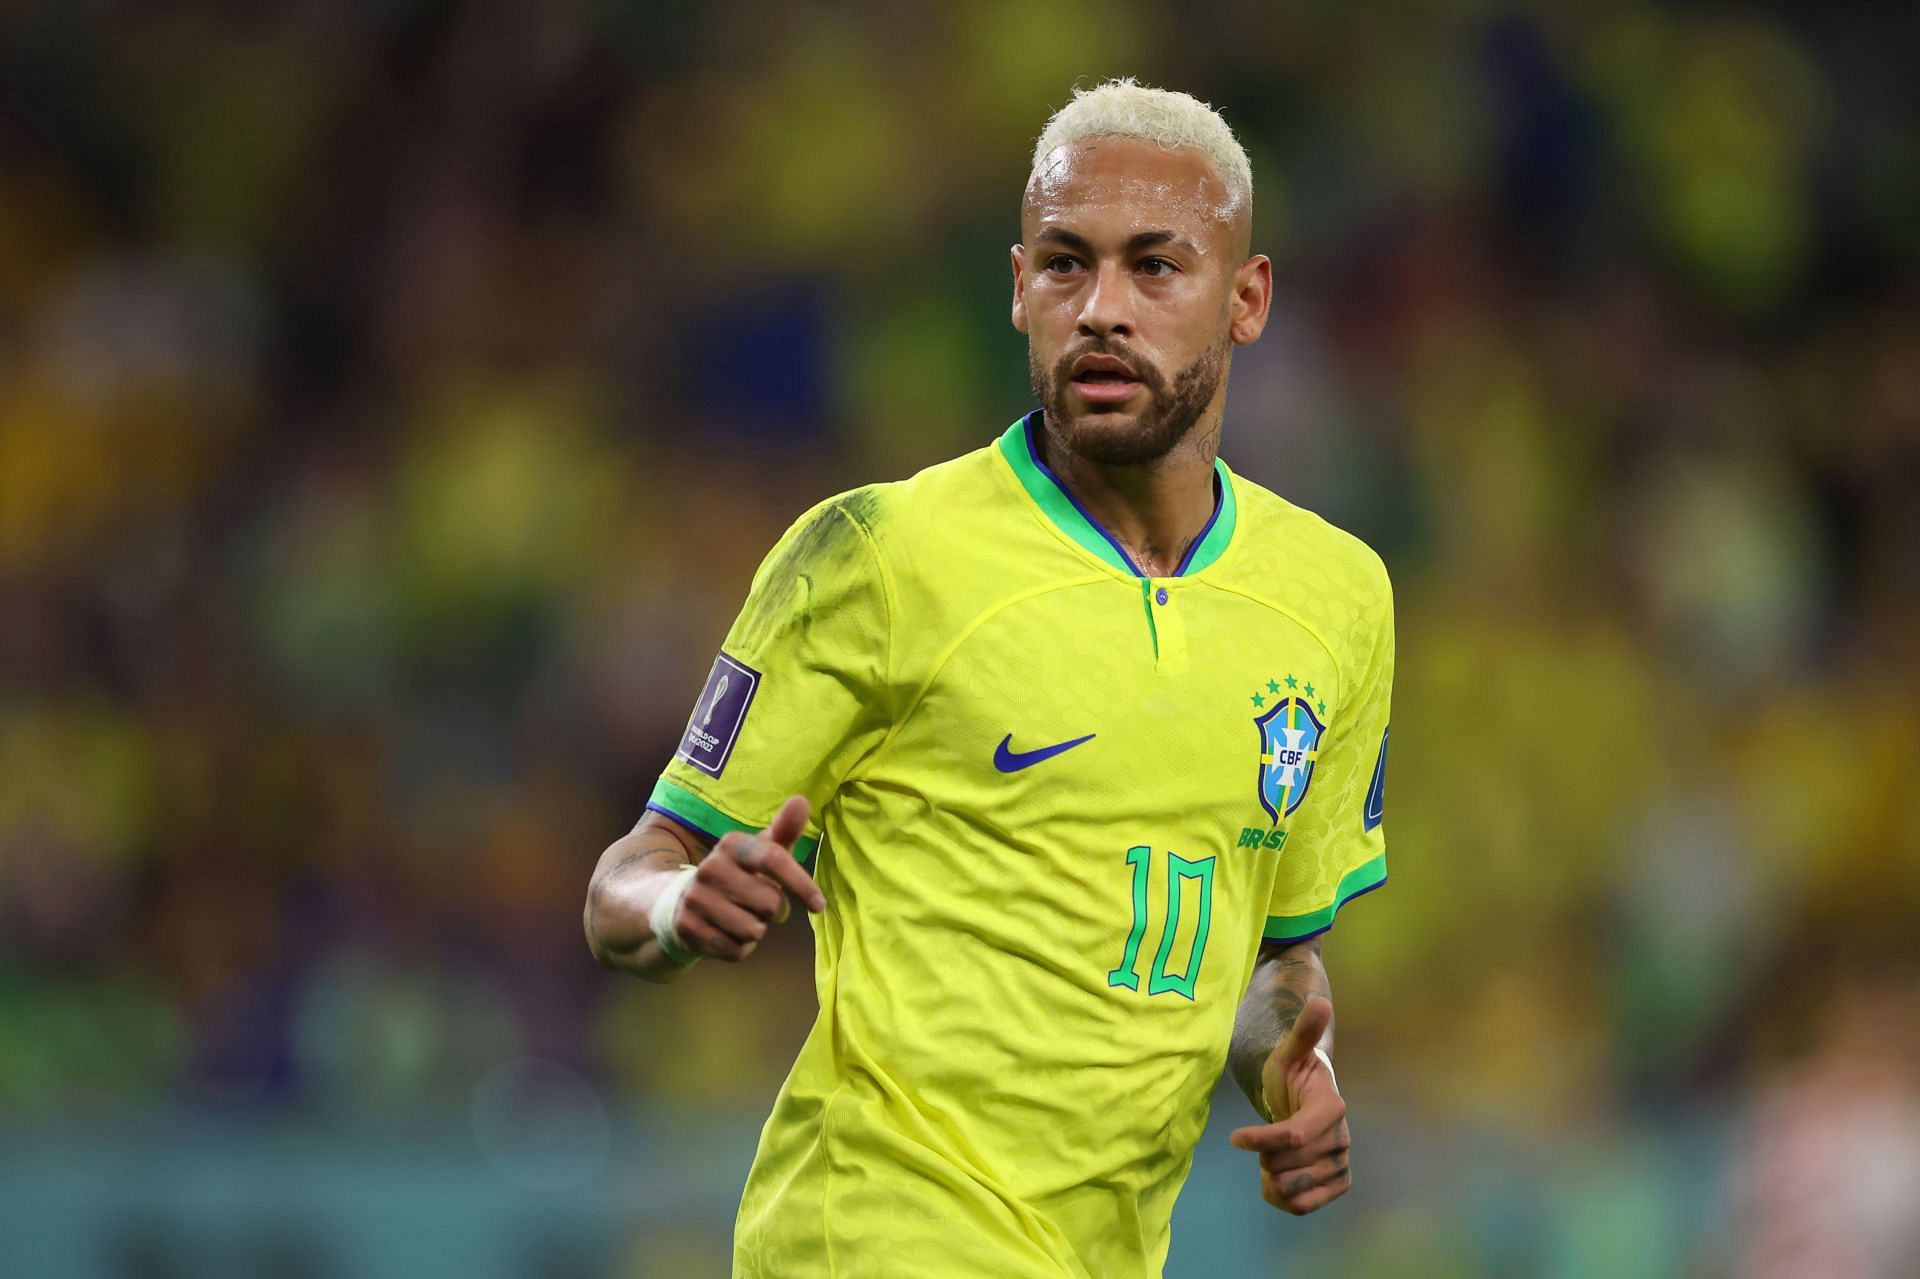 Neymar has been in explosive form this season.